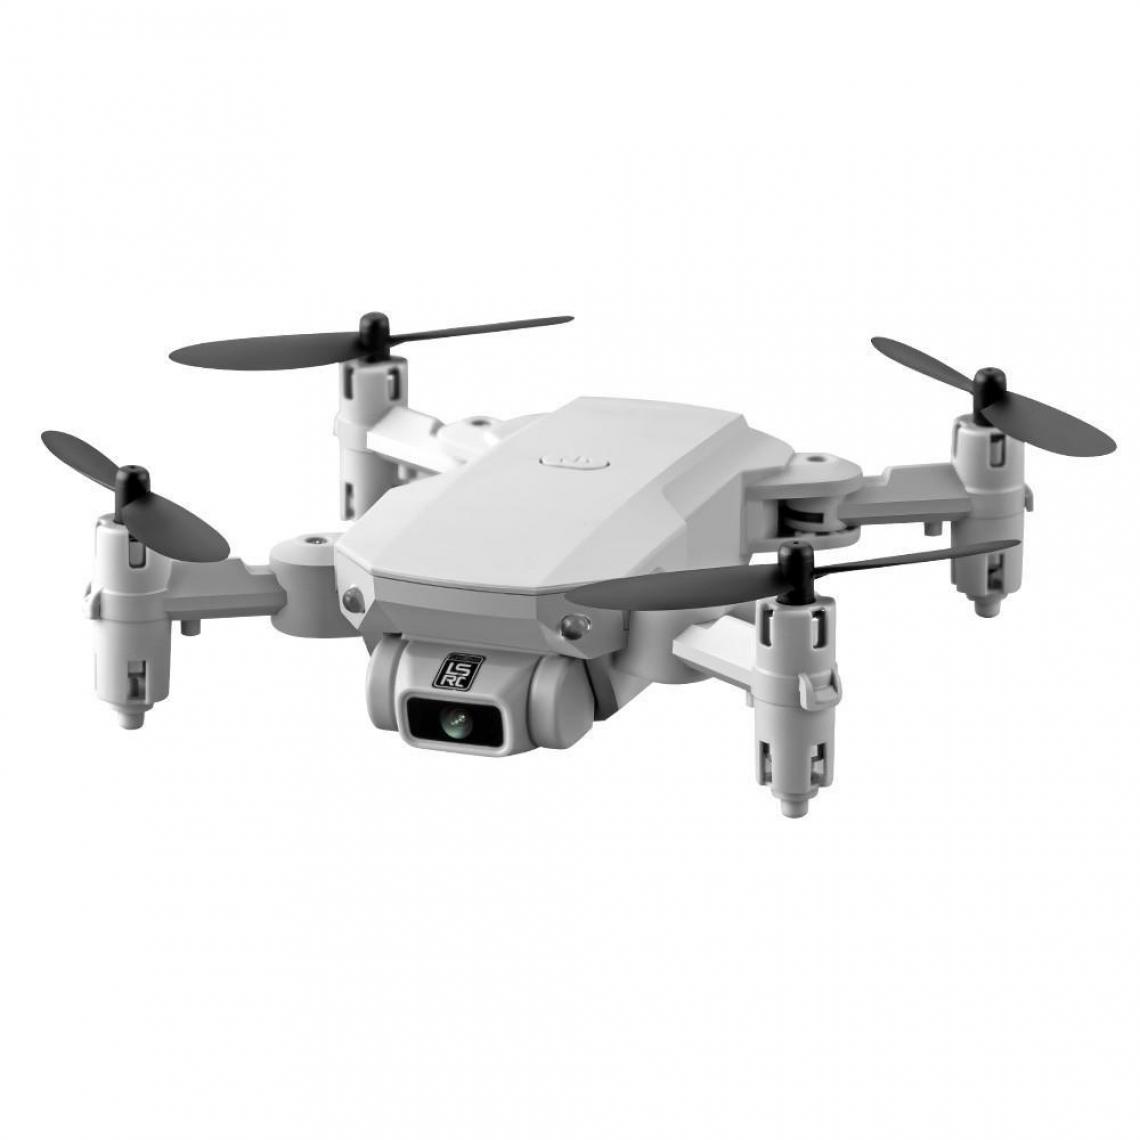 Justgreenbox - Drone pliable avec caméra pour adultes, Gris - Drone connecté